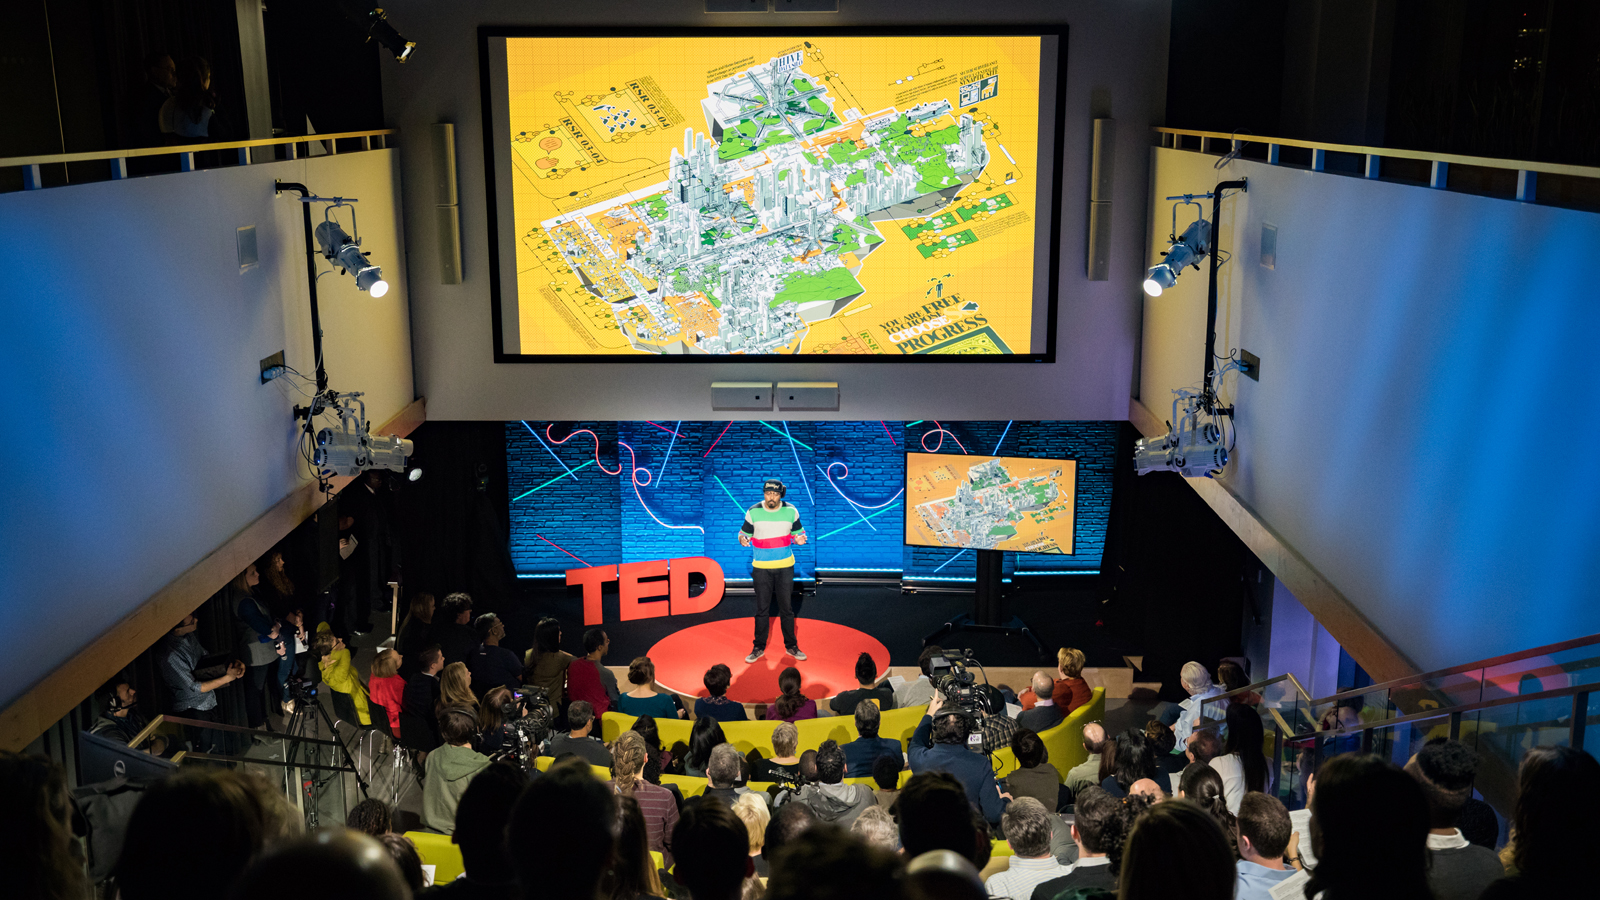 Olalekan Jeyifous speaks at TED Talent Search 2017 - Ideas Search, January 26, 2017, New York, NY. Photo: Anyssa Samari / TED